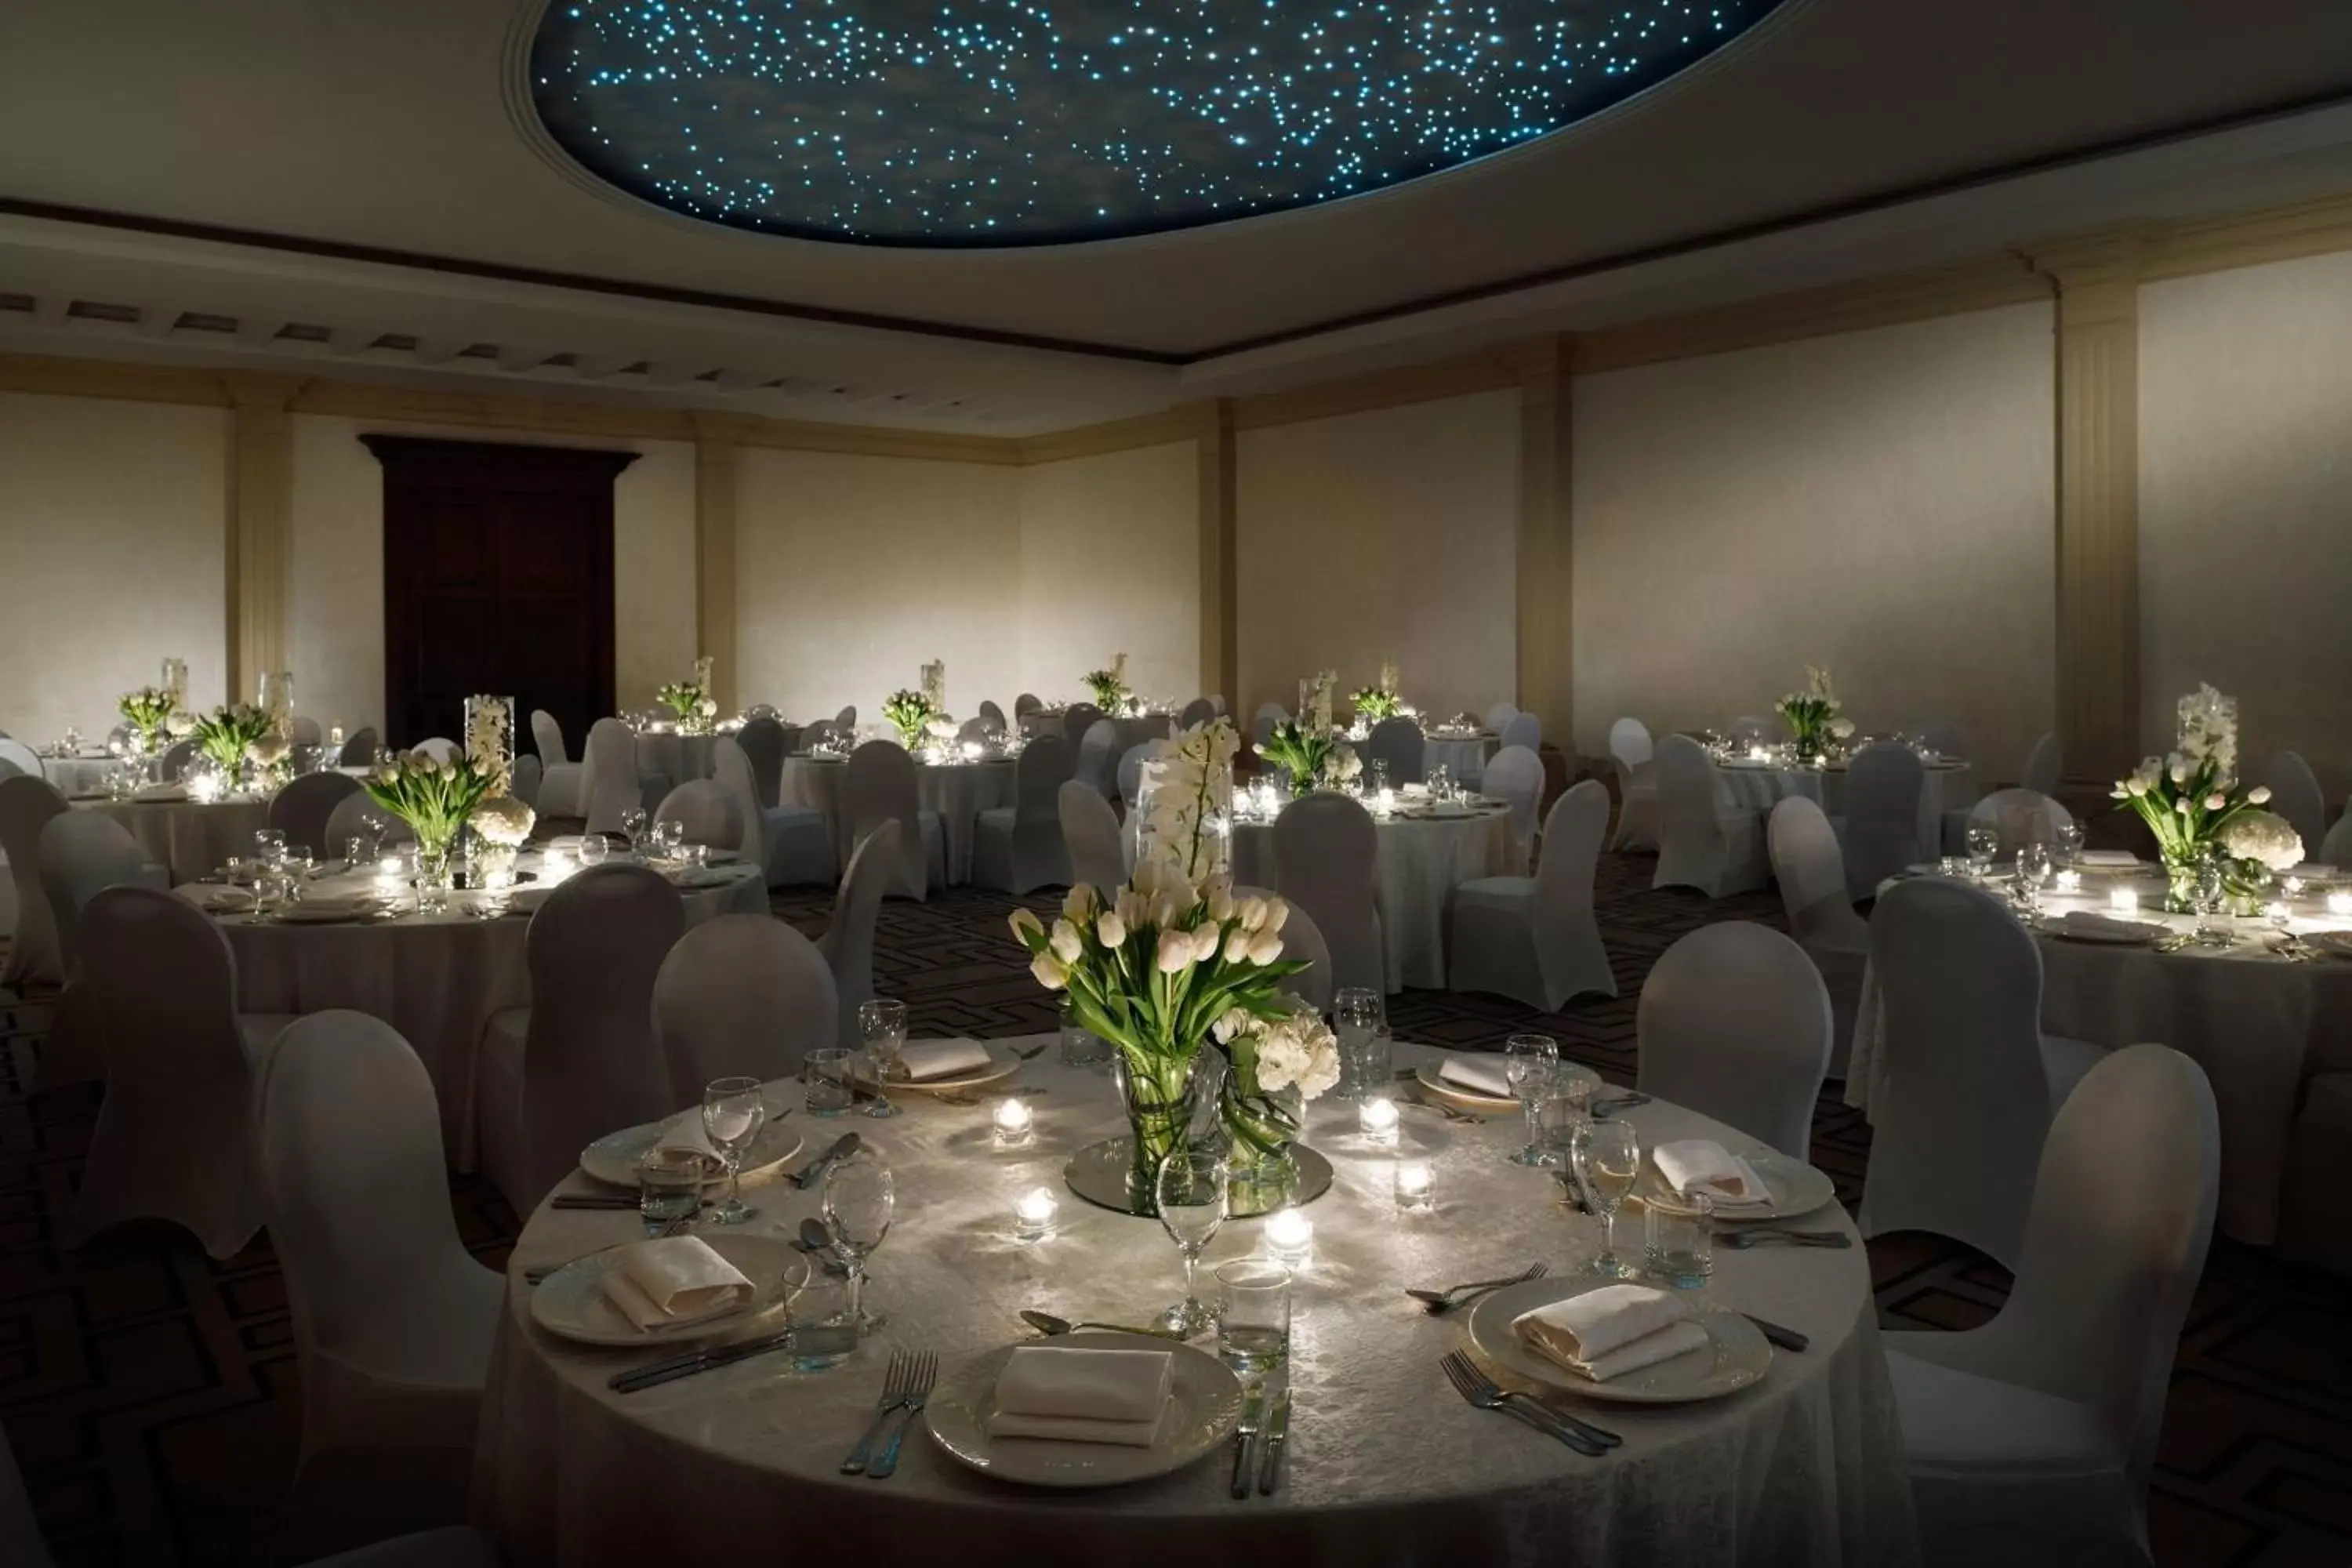 Lobby or reception, Banquet Facilities in Riyadh Marriott Hotel